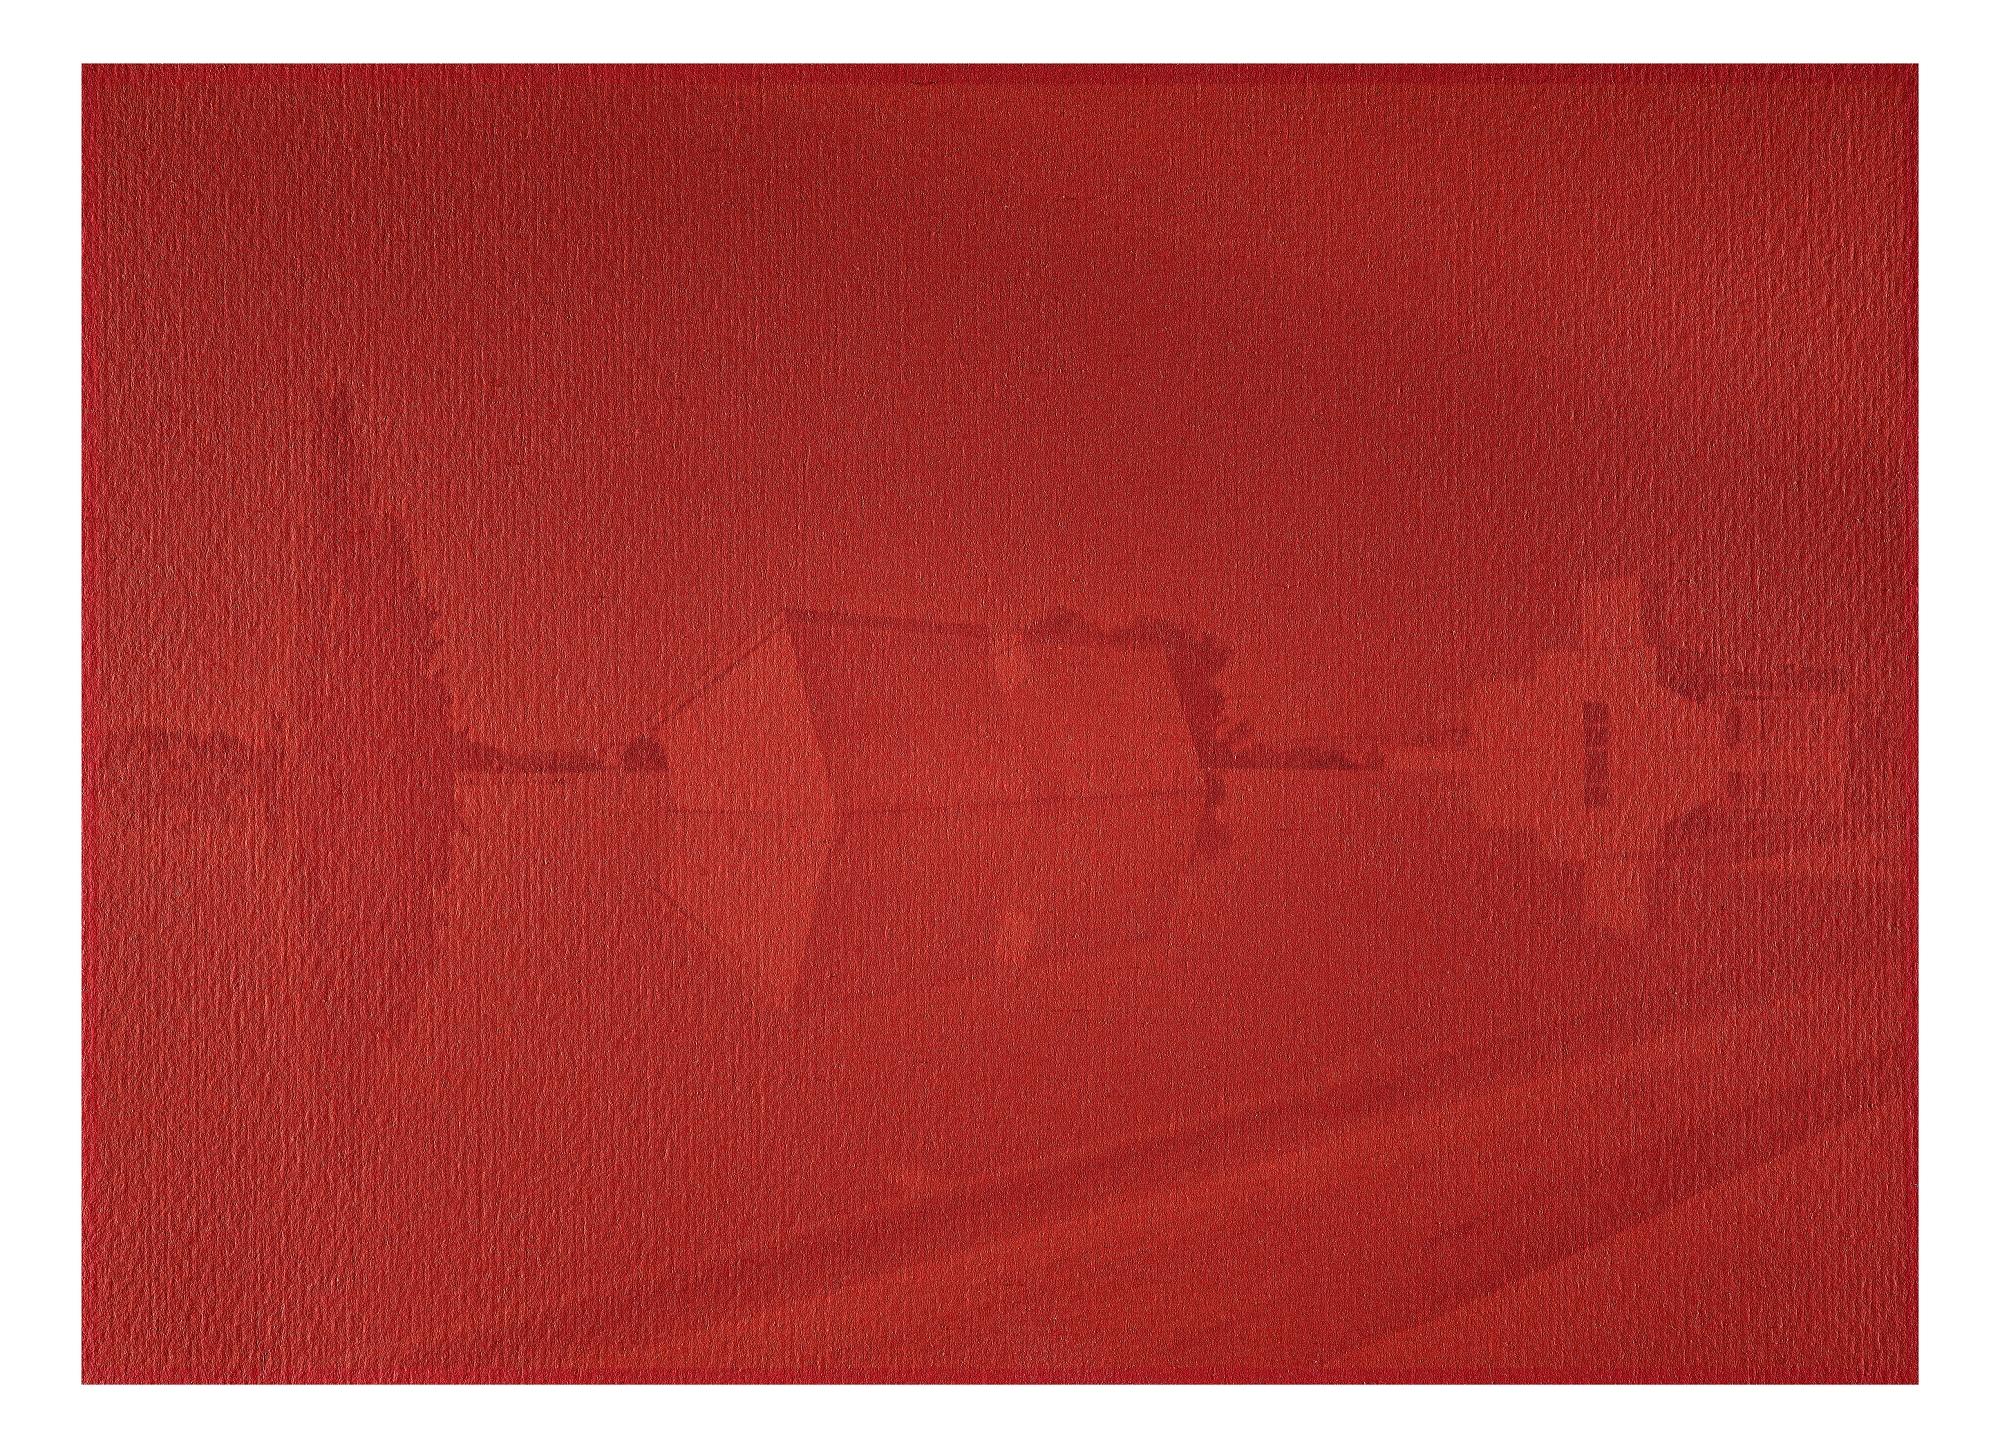 Ola KOLEHMAINEN (*1964, Finnland)
Suprematismus Nr. 101 Landschaft mit Komposition, 2020
Analoger Film, Tuscheabzug im Künstlerrahmen
Blatt 164 x 221 cm (64 5/8 x 87 in.)
Ausgabe von 6, plus 2 AP; Ed. Nr. 1/6
Gerahmter Druck

Über Back to Square